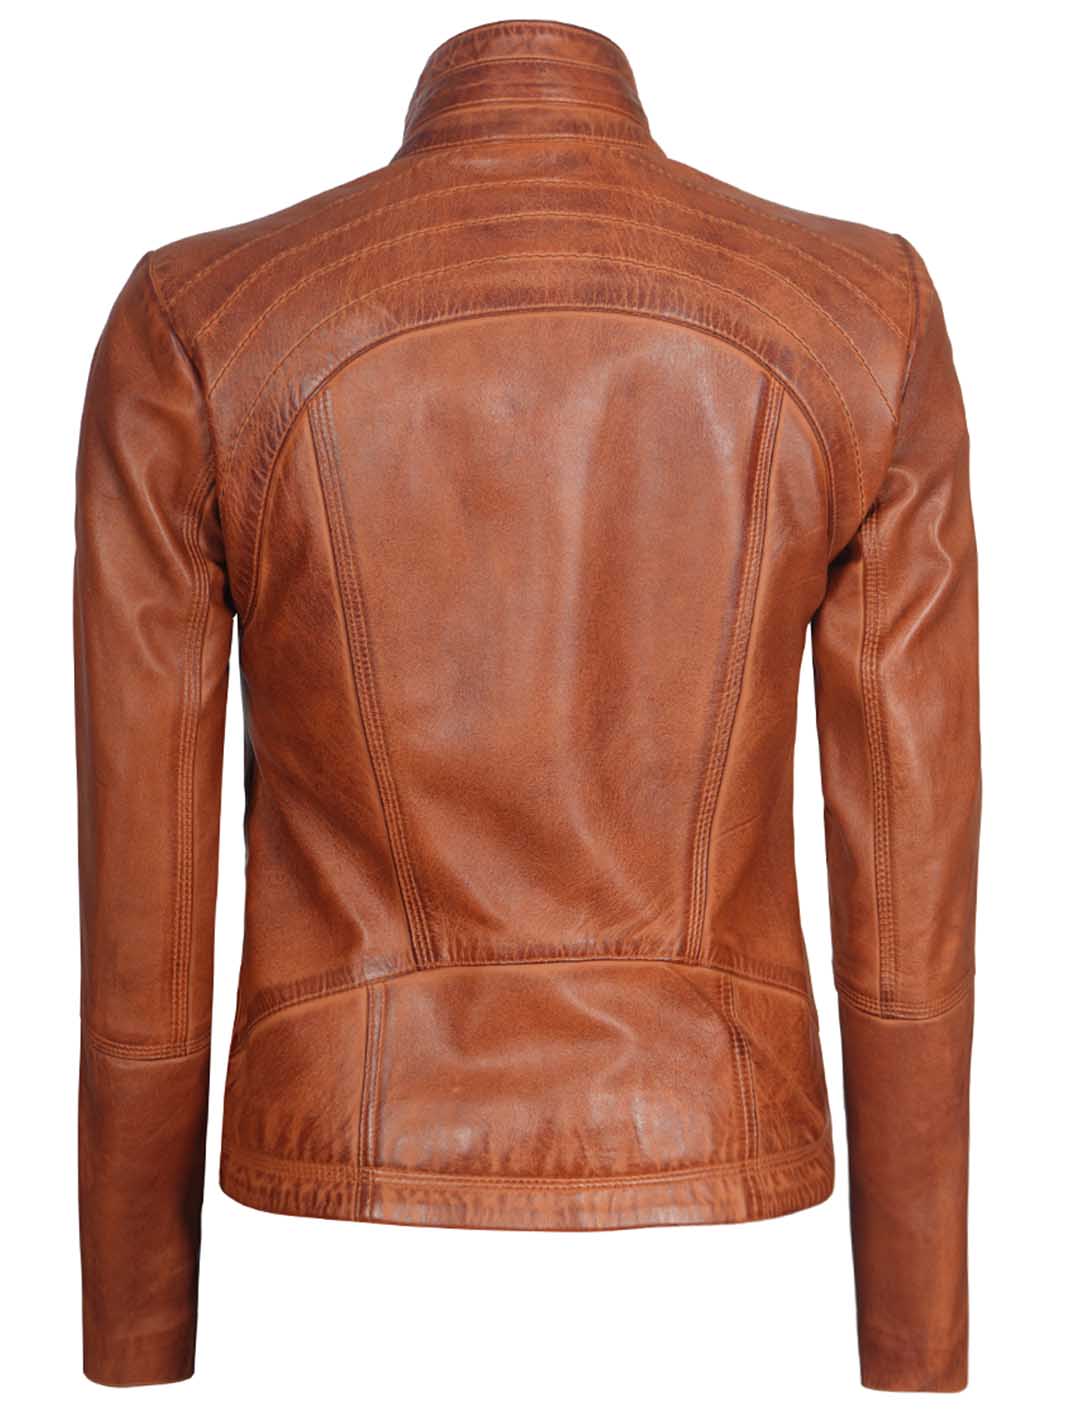 Womens Cafe Racer biker leather jacket